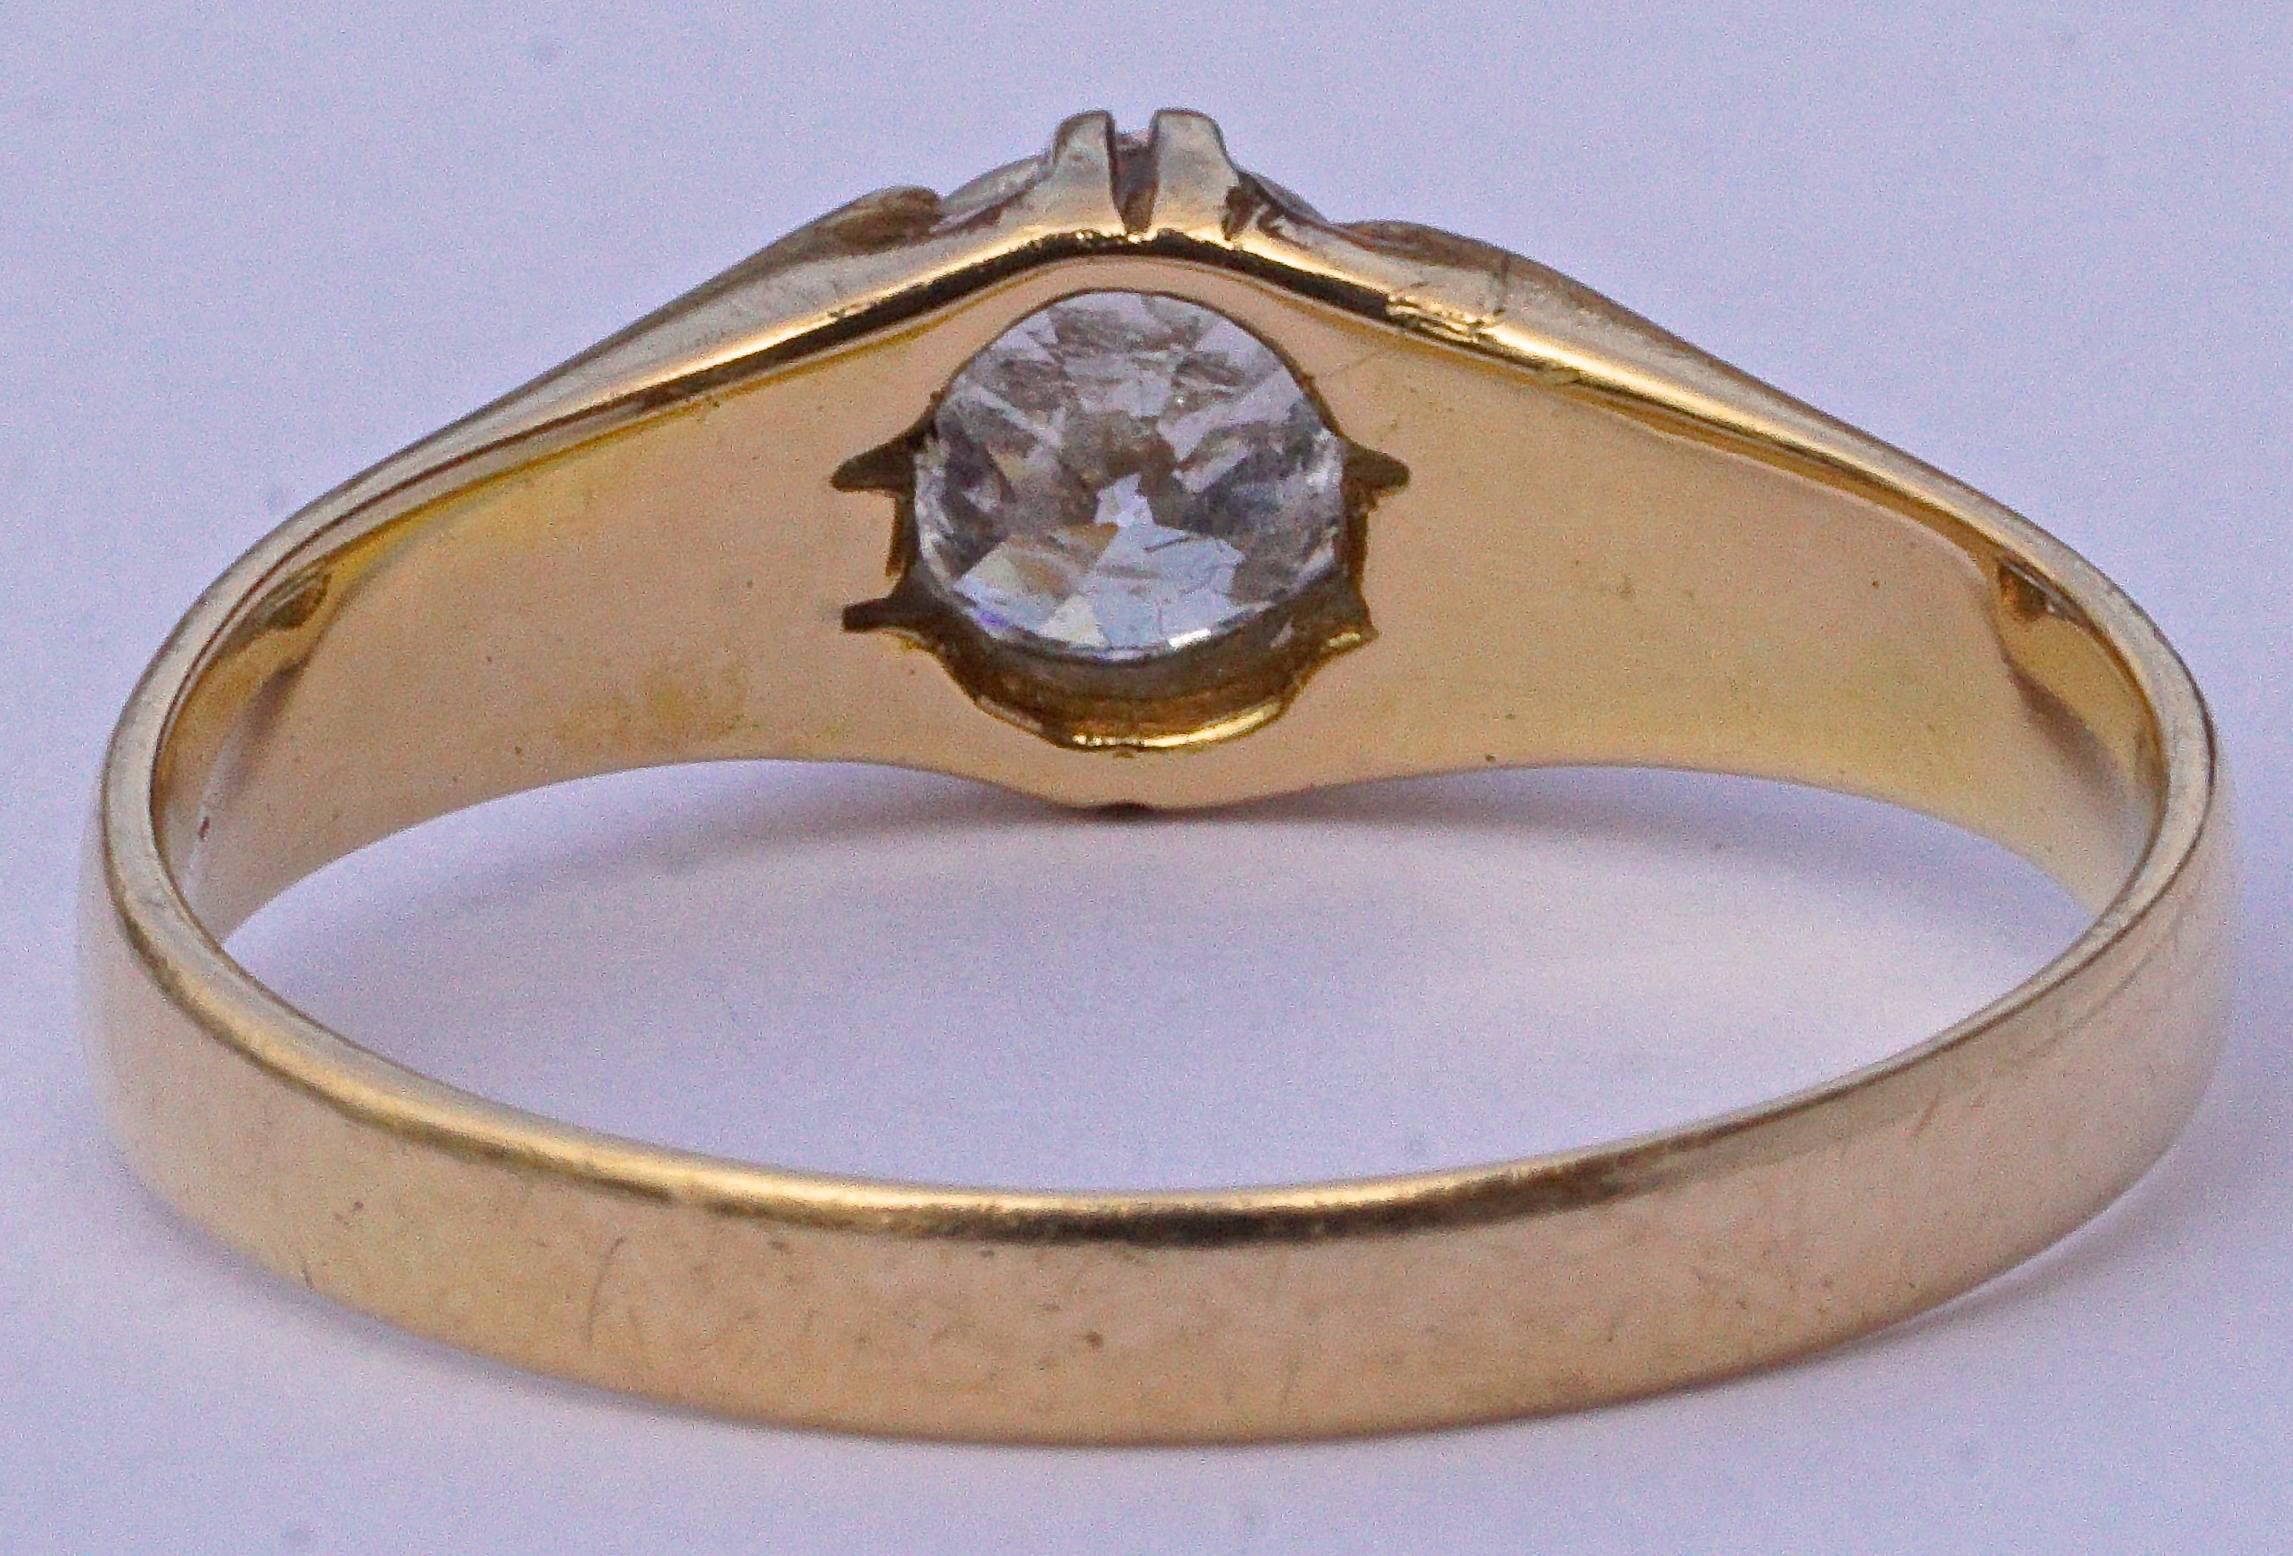 Bague en or 18ct ornée d'un joli solitaire en diamant. Bague de taille UK Q 1/2 / US 8 1/4, et diamètre intérieur 1.9cm / .75 inches. La profondeur de réglage est de 3 mm. Le diamant de taille ancienne pèse entre 0,48 et 0,52 carats, et la bande